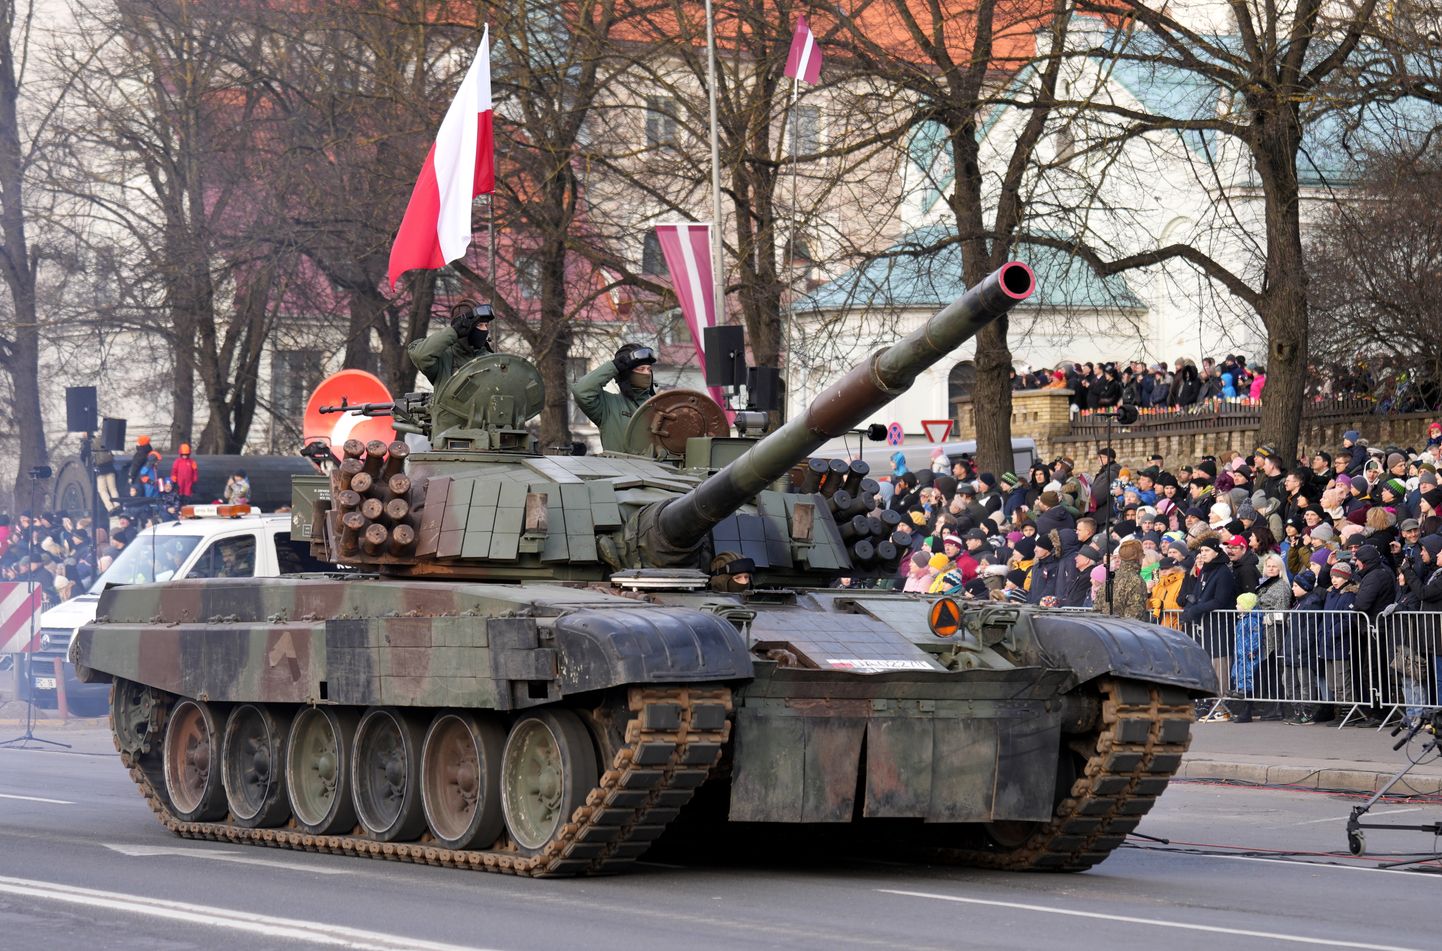 Парад Национальных вооруженных сил, союзников по НАТО и учреждений МВД на набережной 11 ноября